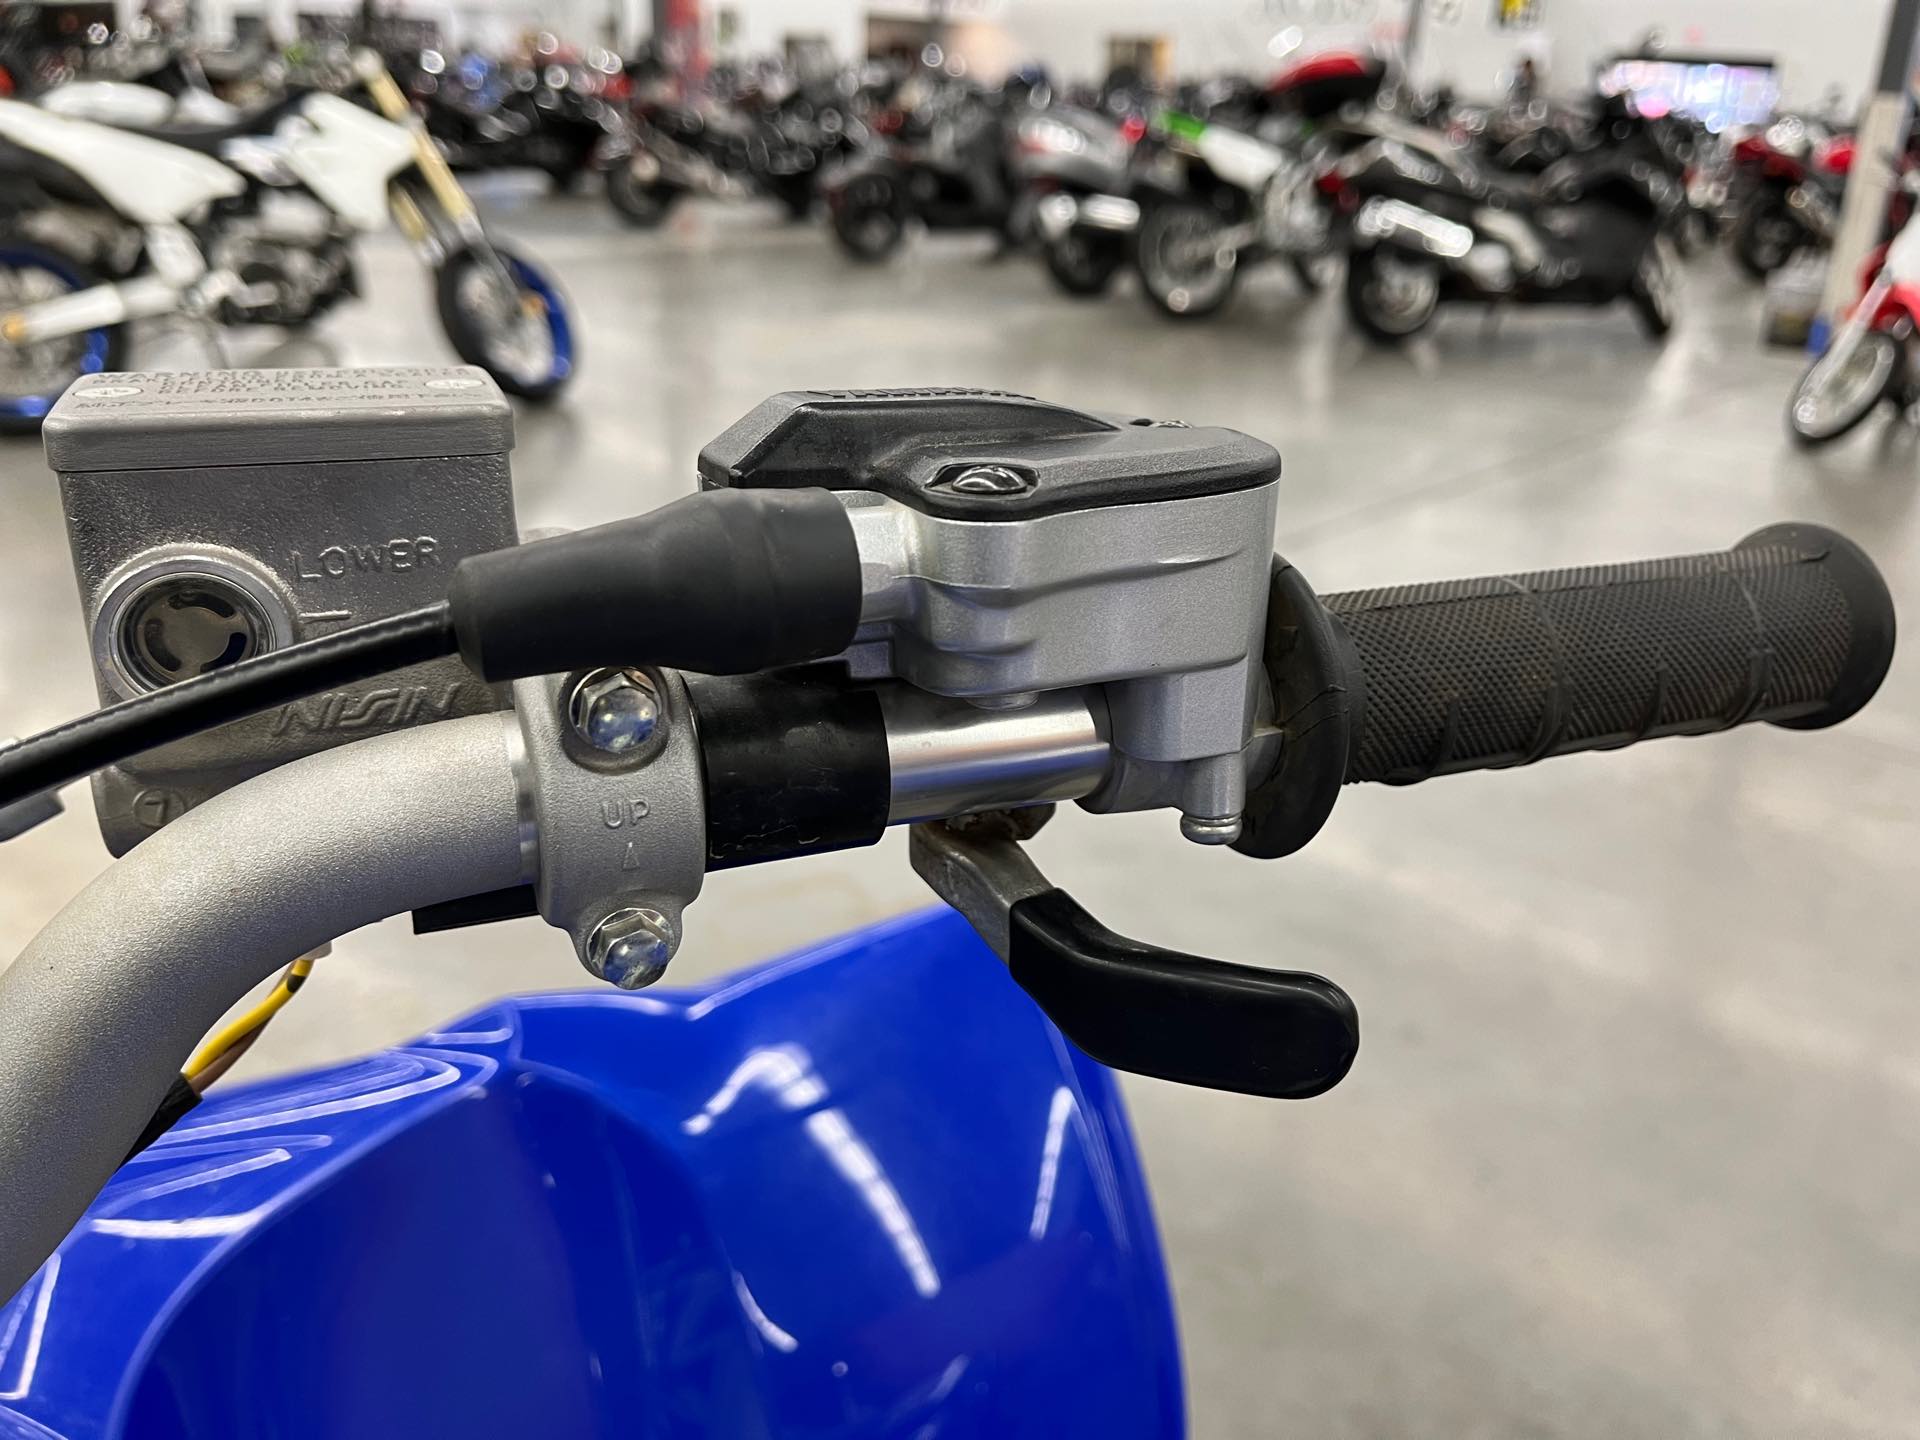 2018 Yamaha YFZ 450R at Aces Motorcycles - Denver